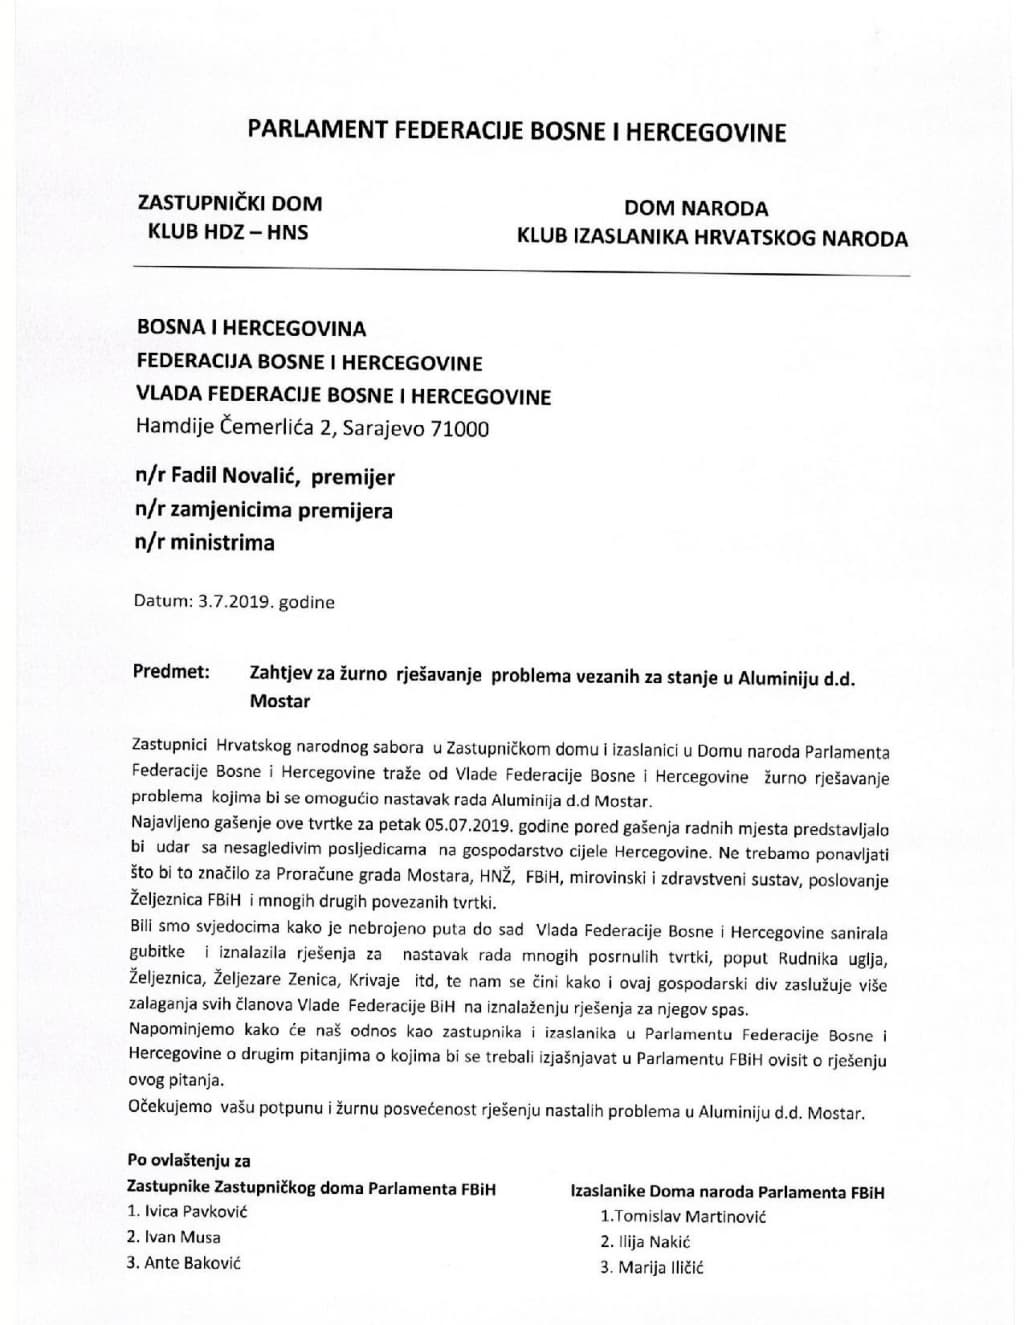 Zahtjev Klubova HNS-a u Parlamentu Federacije BiH za rješavanje problema u Aluminiju-page-001.jpg